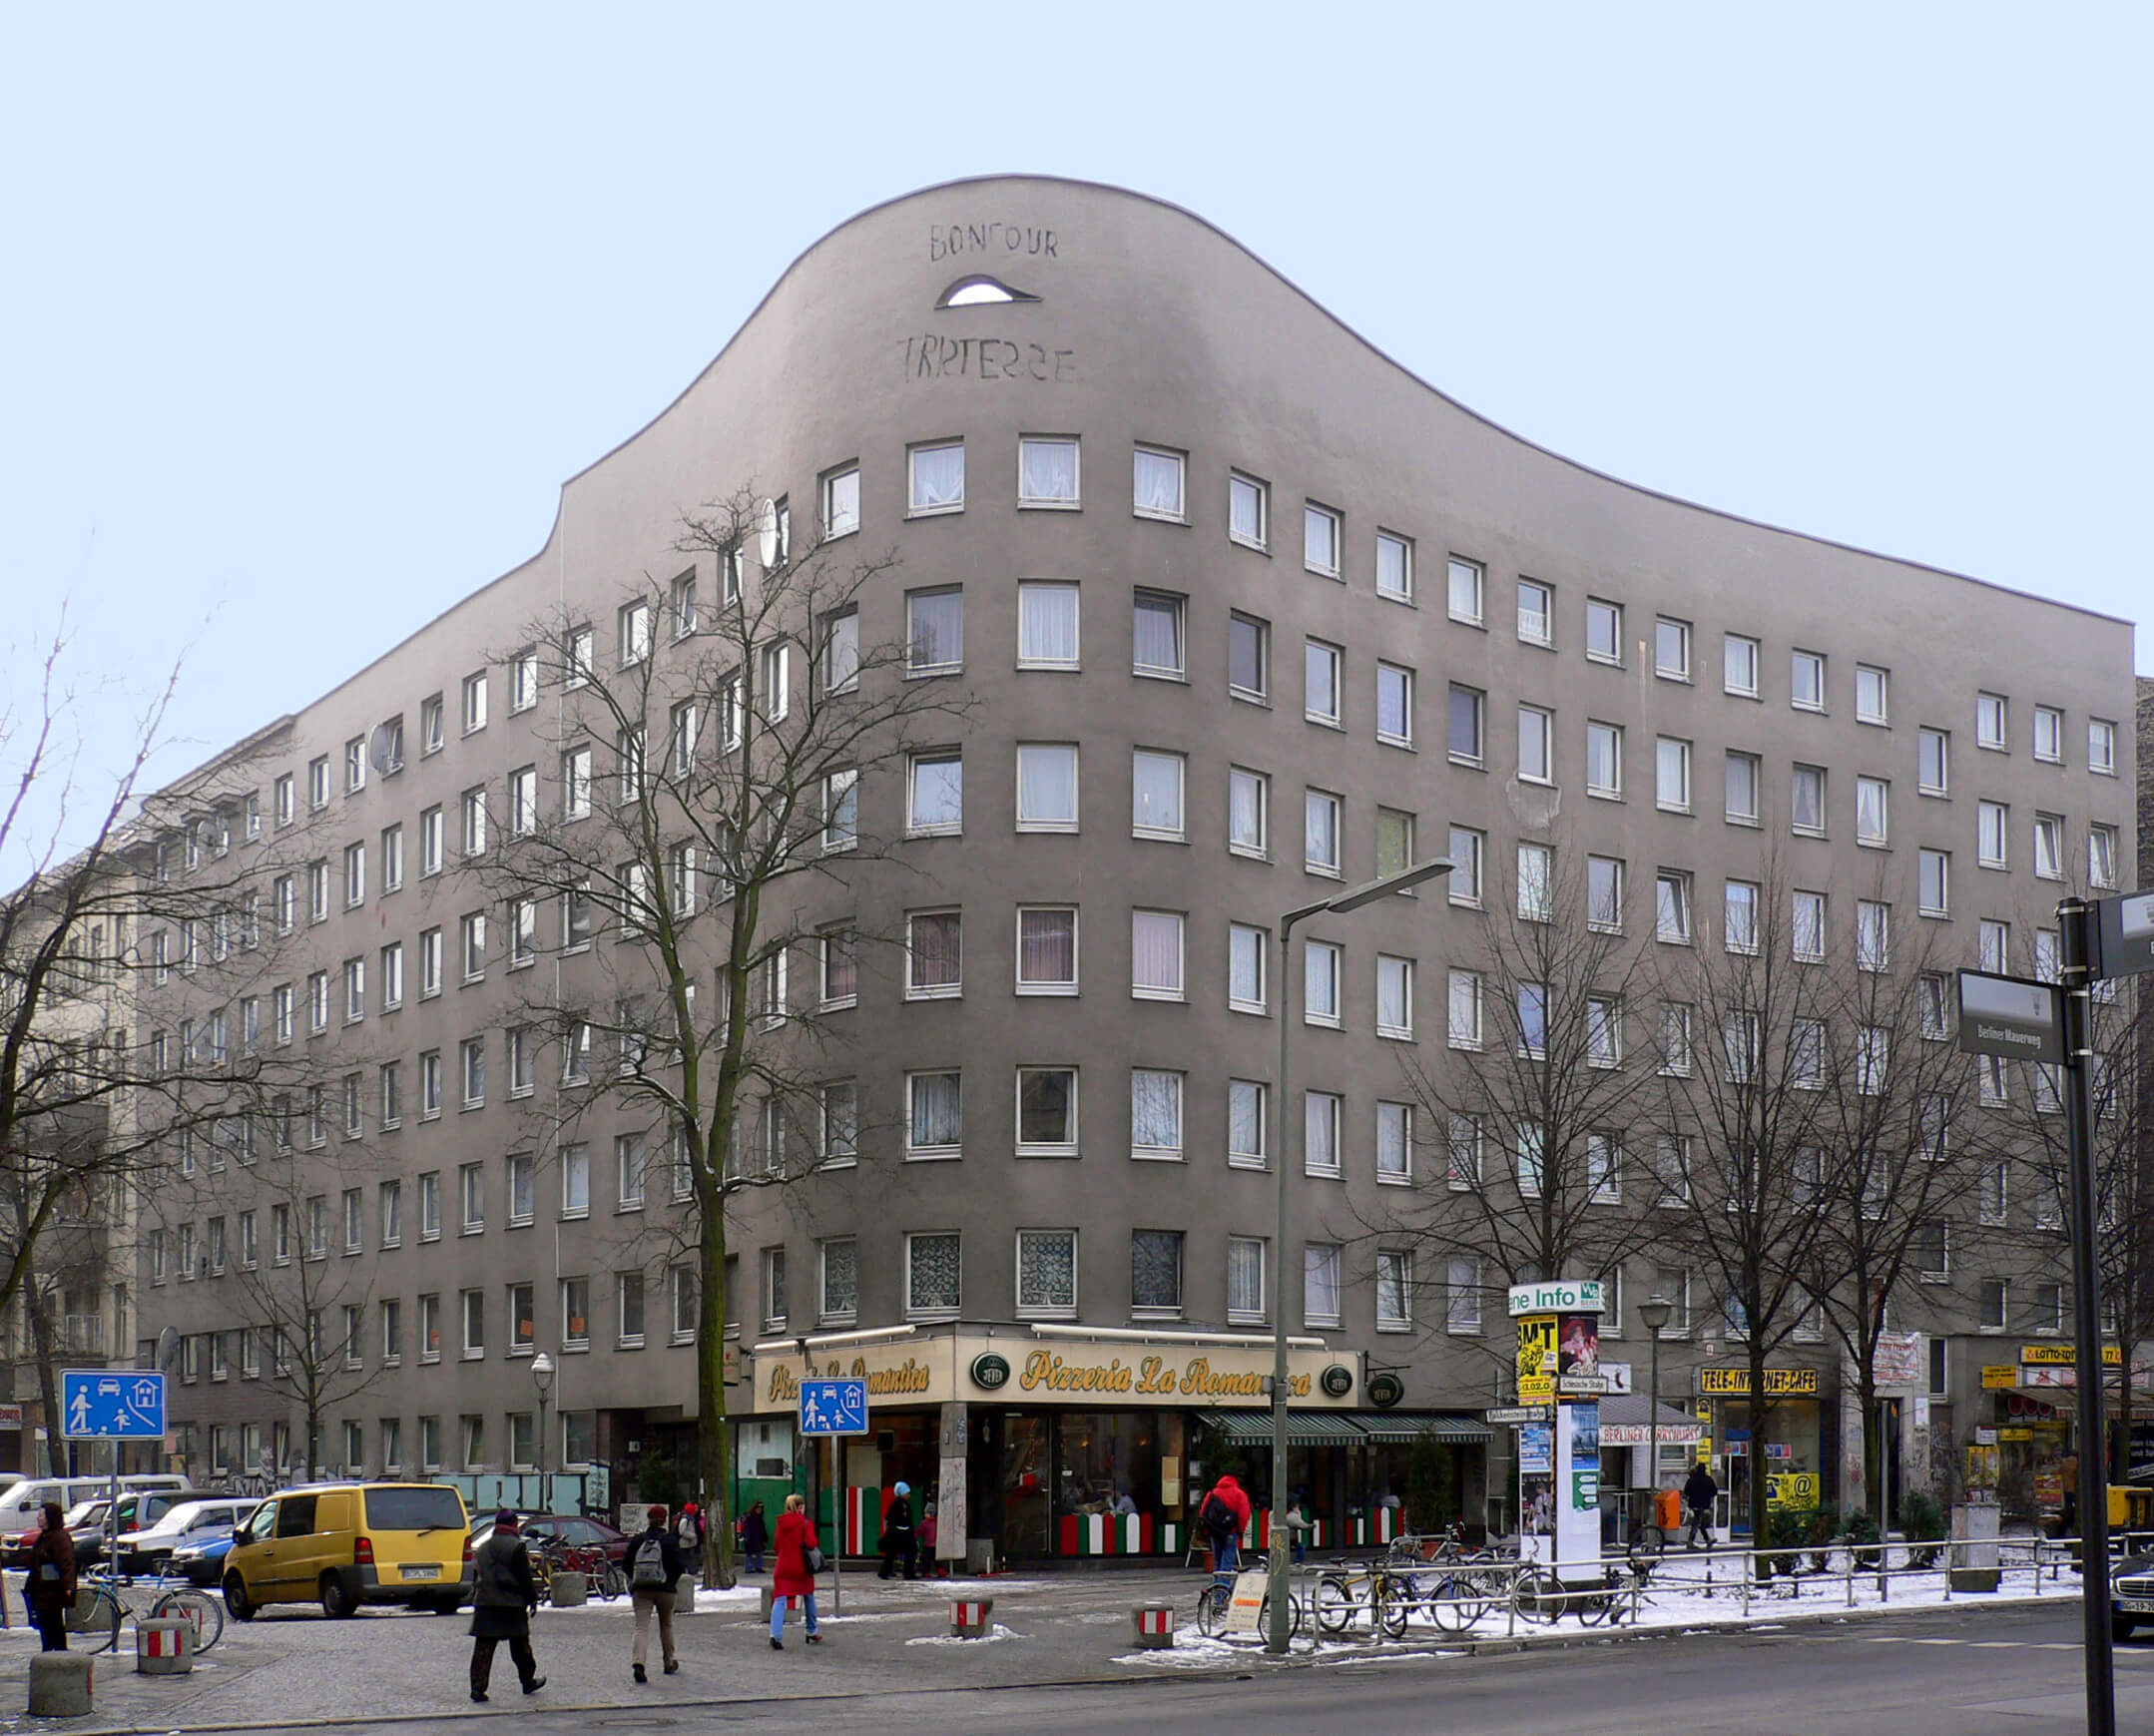 https://commons.wikimedia.org/wiki/File:Berlin_schlesische-str-7_bonjour-tristesse_20050224_p1010029.jpg